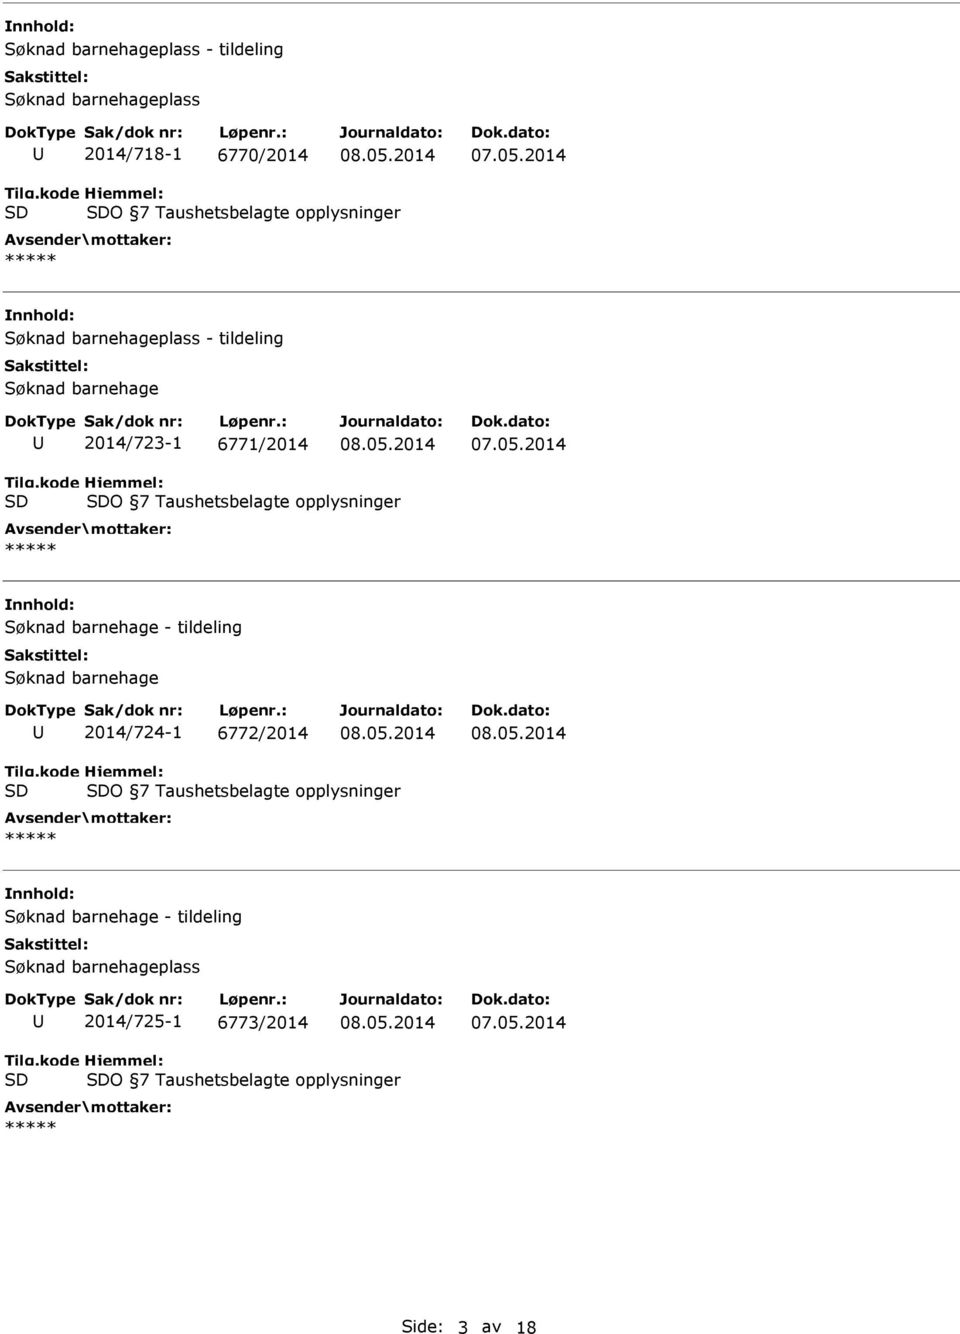 opplysninger Søknad barnehage - tildeling Søknad barnehage 2014/724-1 6772/2014 O 7 Taushetsbelagte